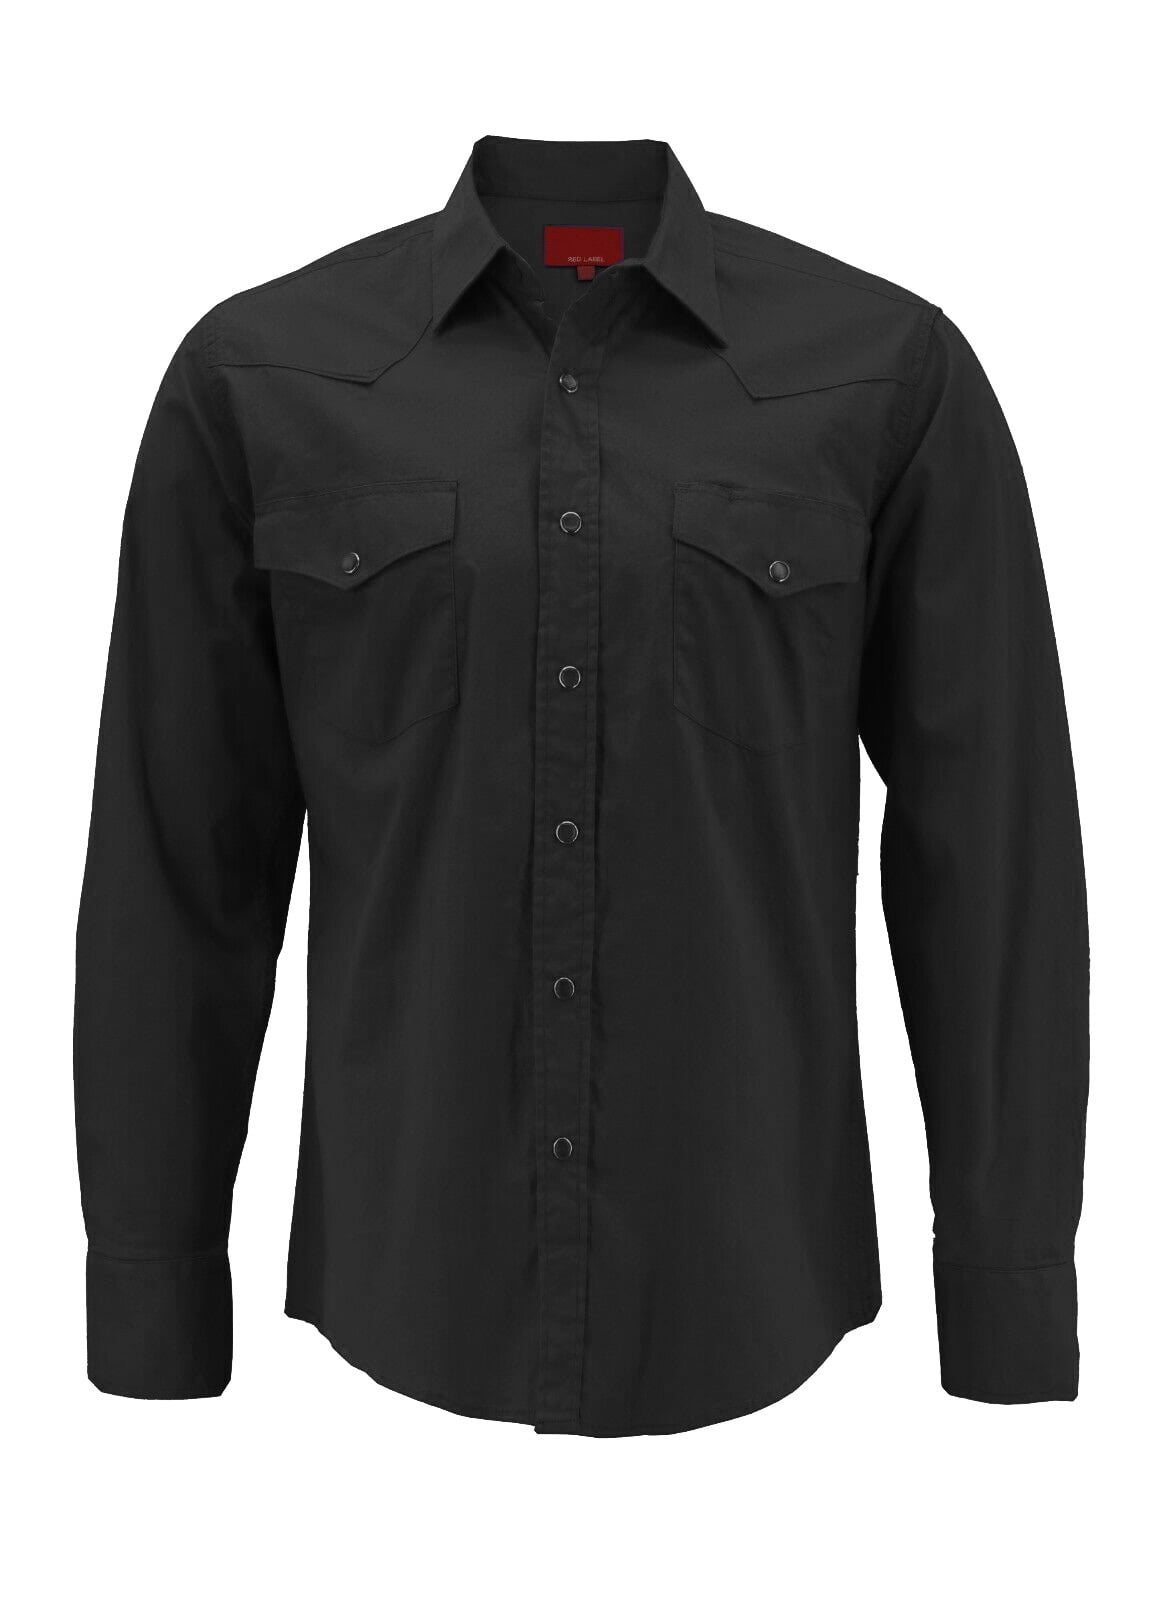 Spinner Brand Red Label Apples Men's T-Shirt / Black / L